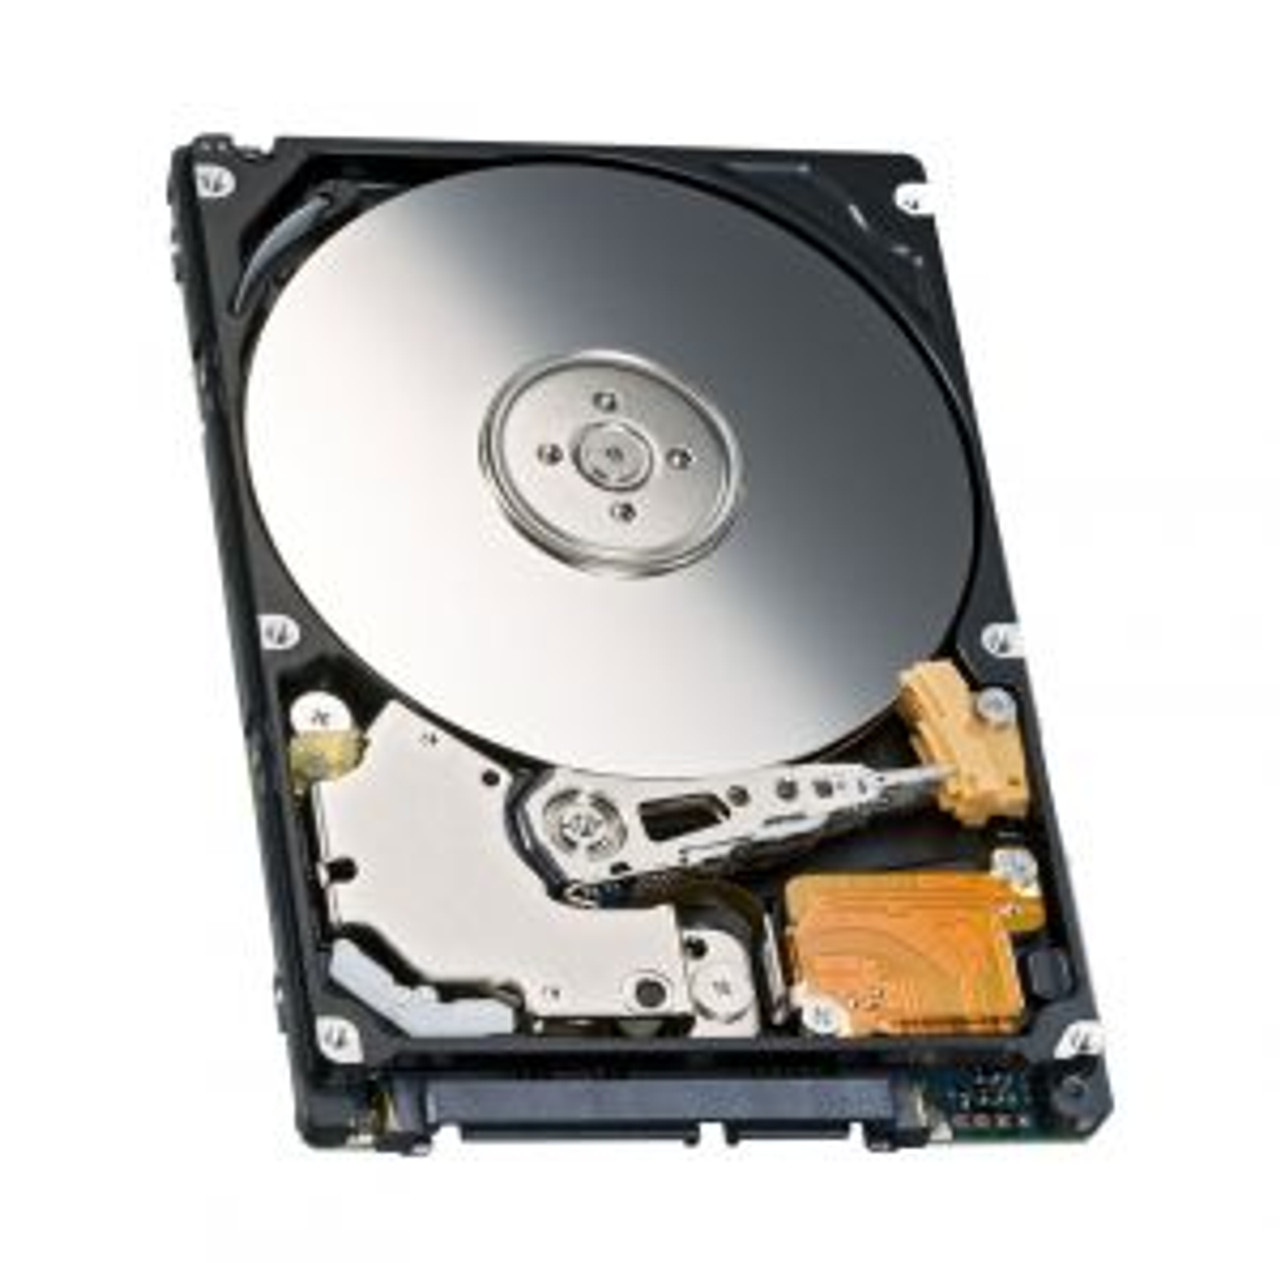 TJ691 Dell 80GB 5400RPM SATA 2.5-inch Hard Disk Drive